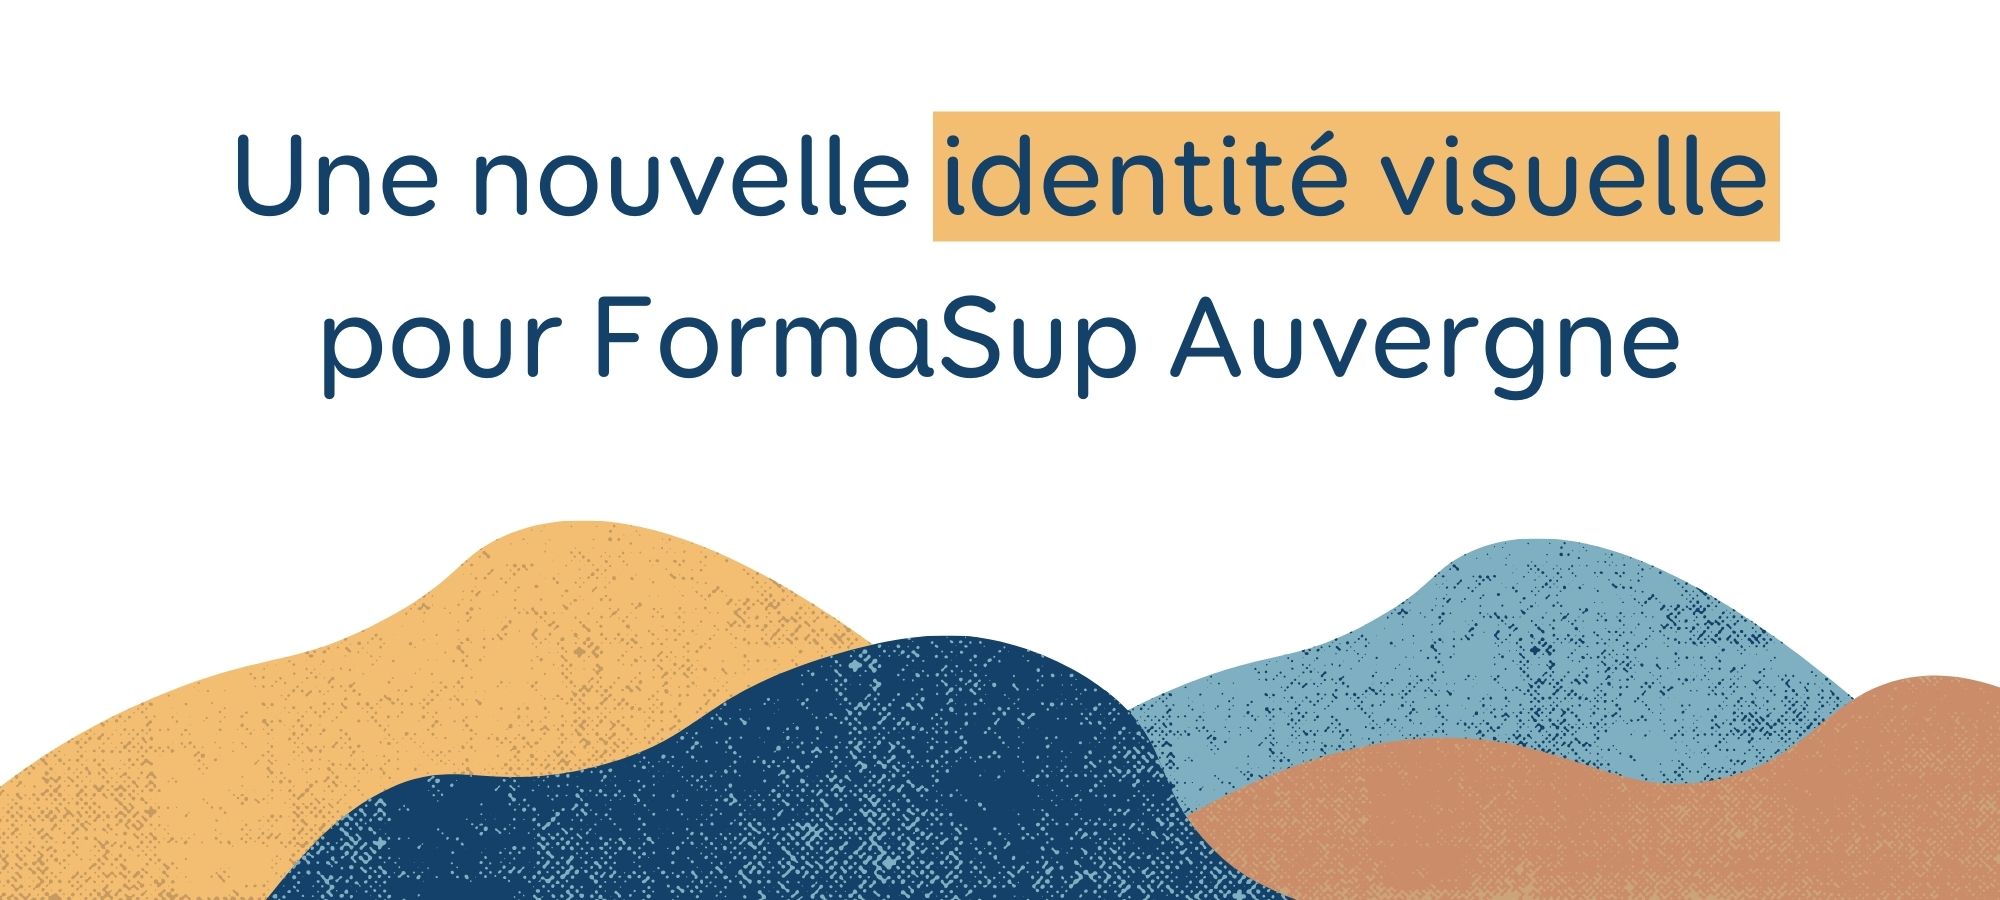 Une nouvelle identité visuelle pour FormaSup Auvergne